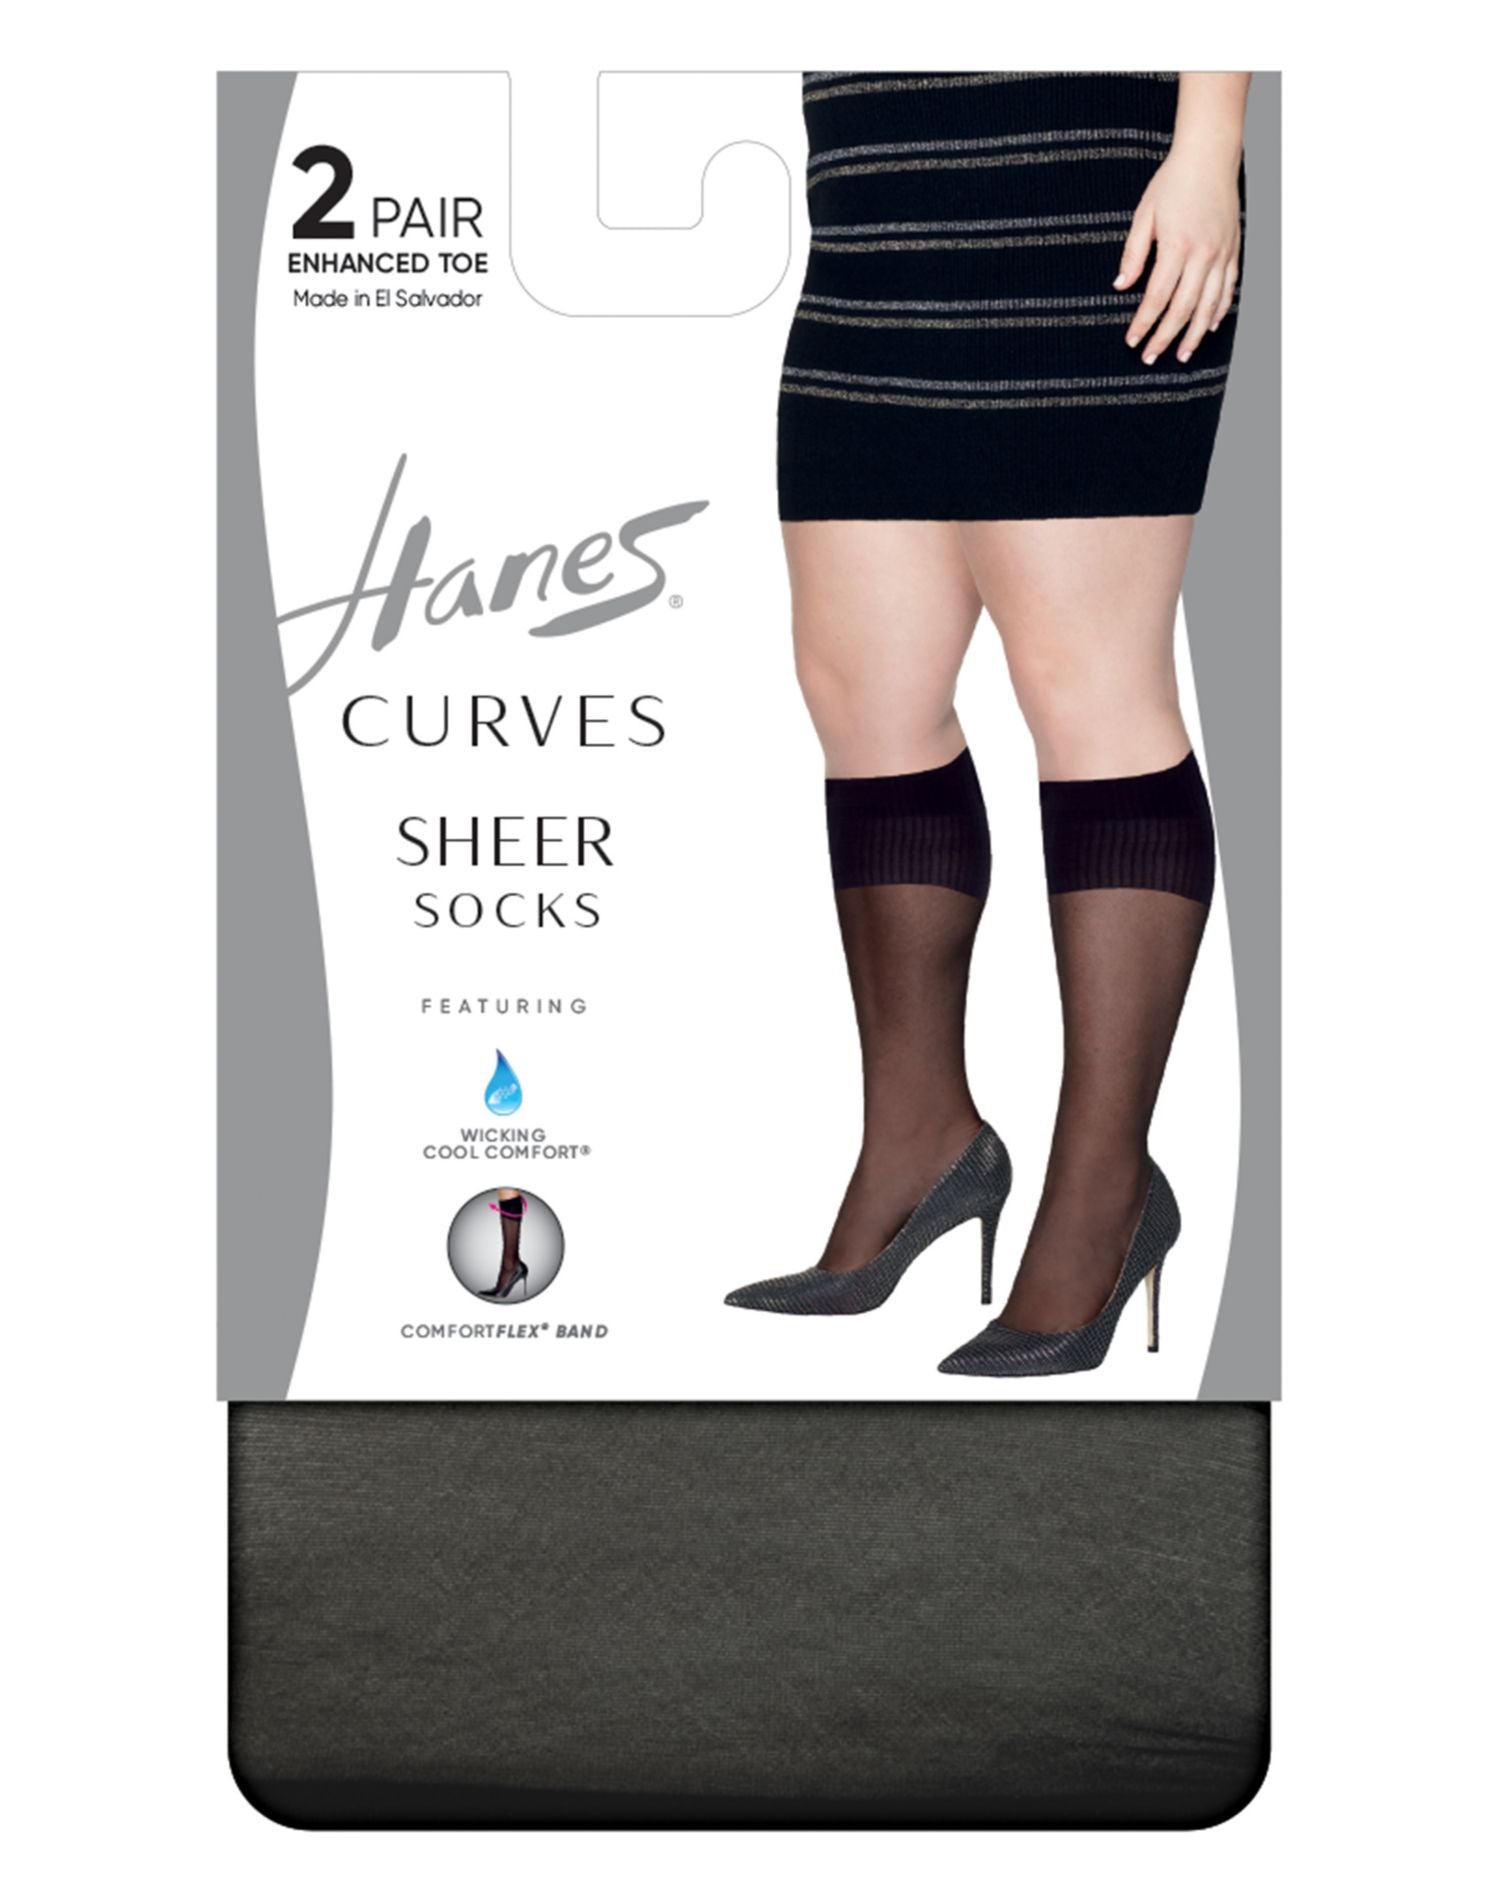 Hsp020 Hanes Womens Curves Sheer Socks 2 Pack